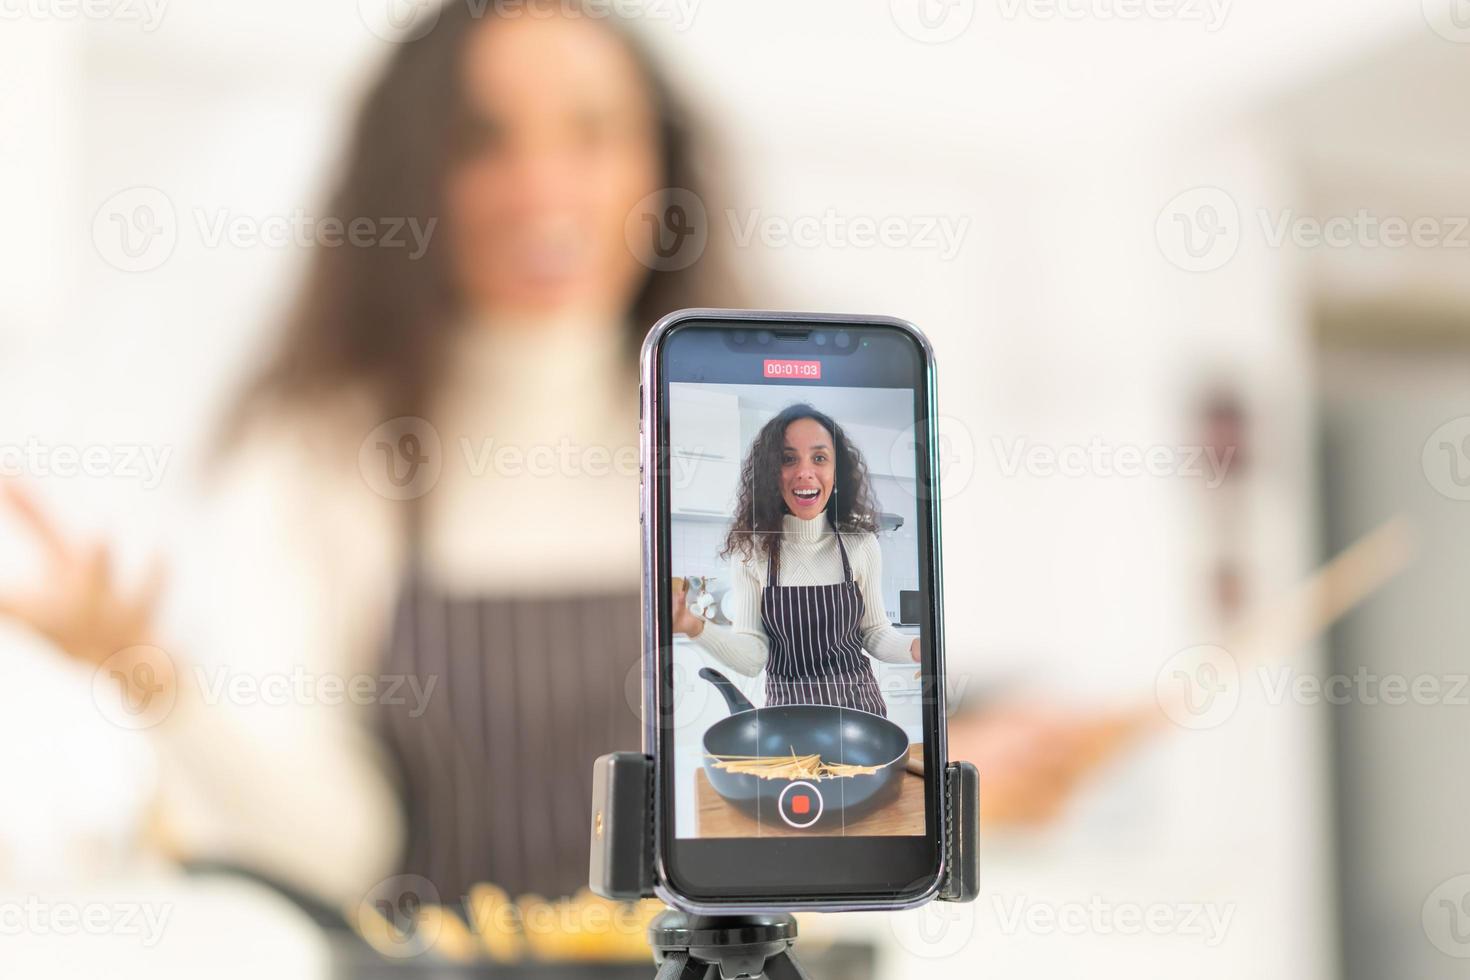 donna latina che gira video e cucina in cucina foto